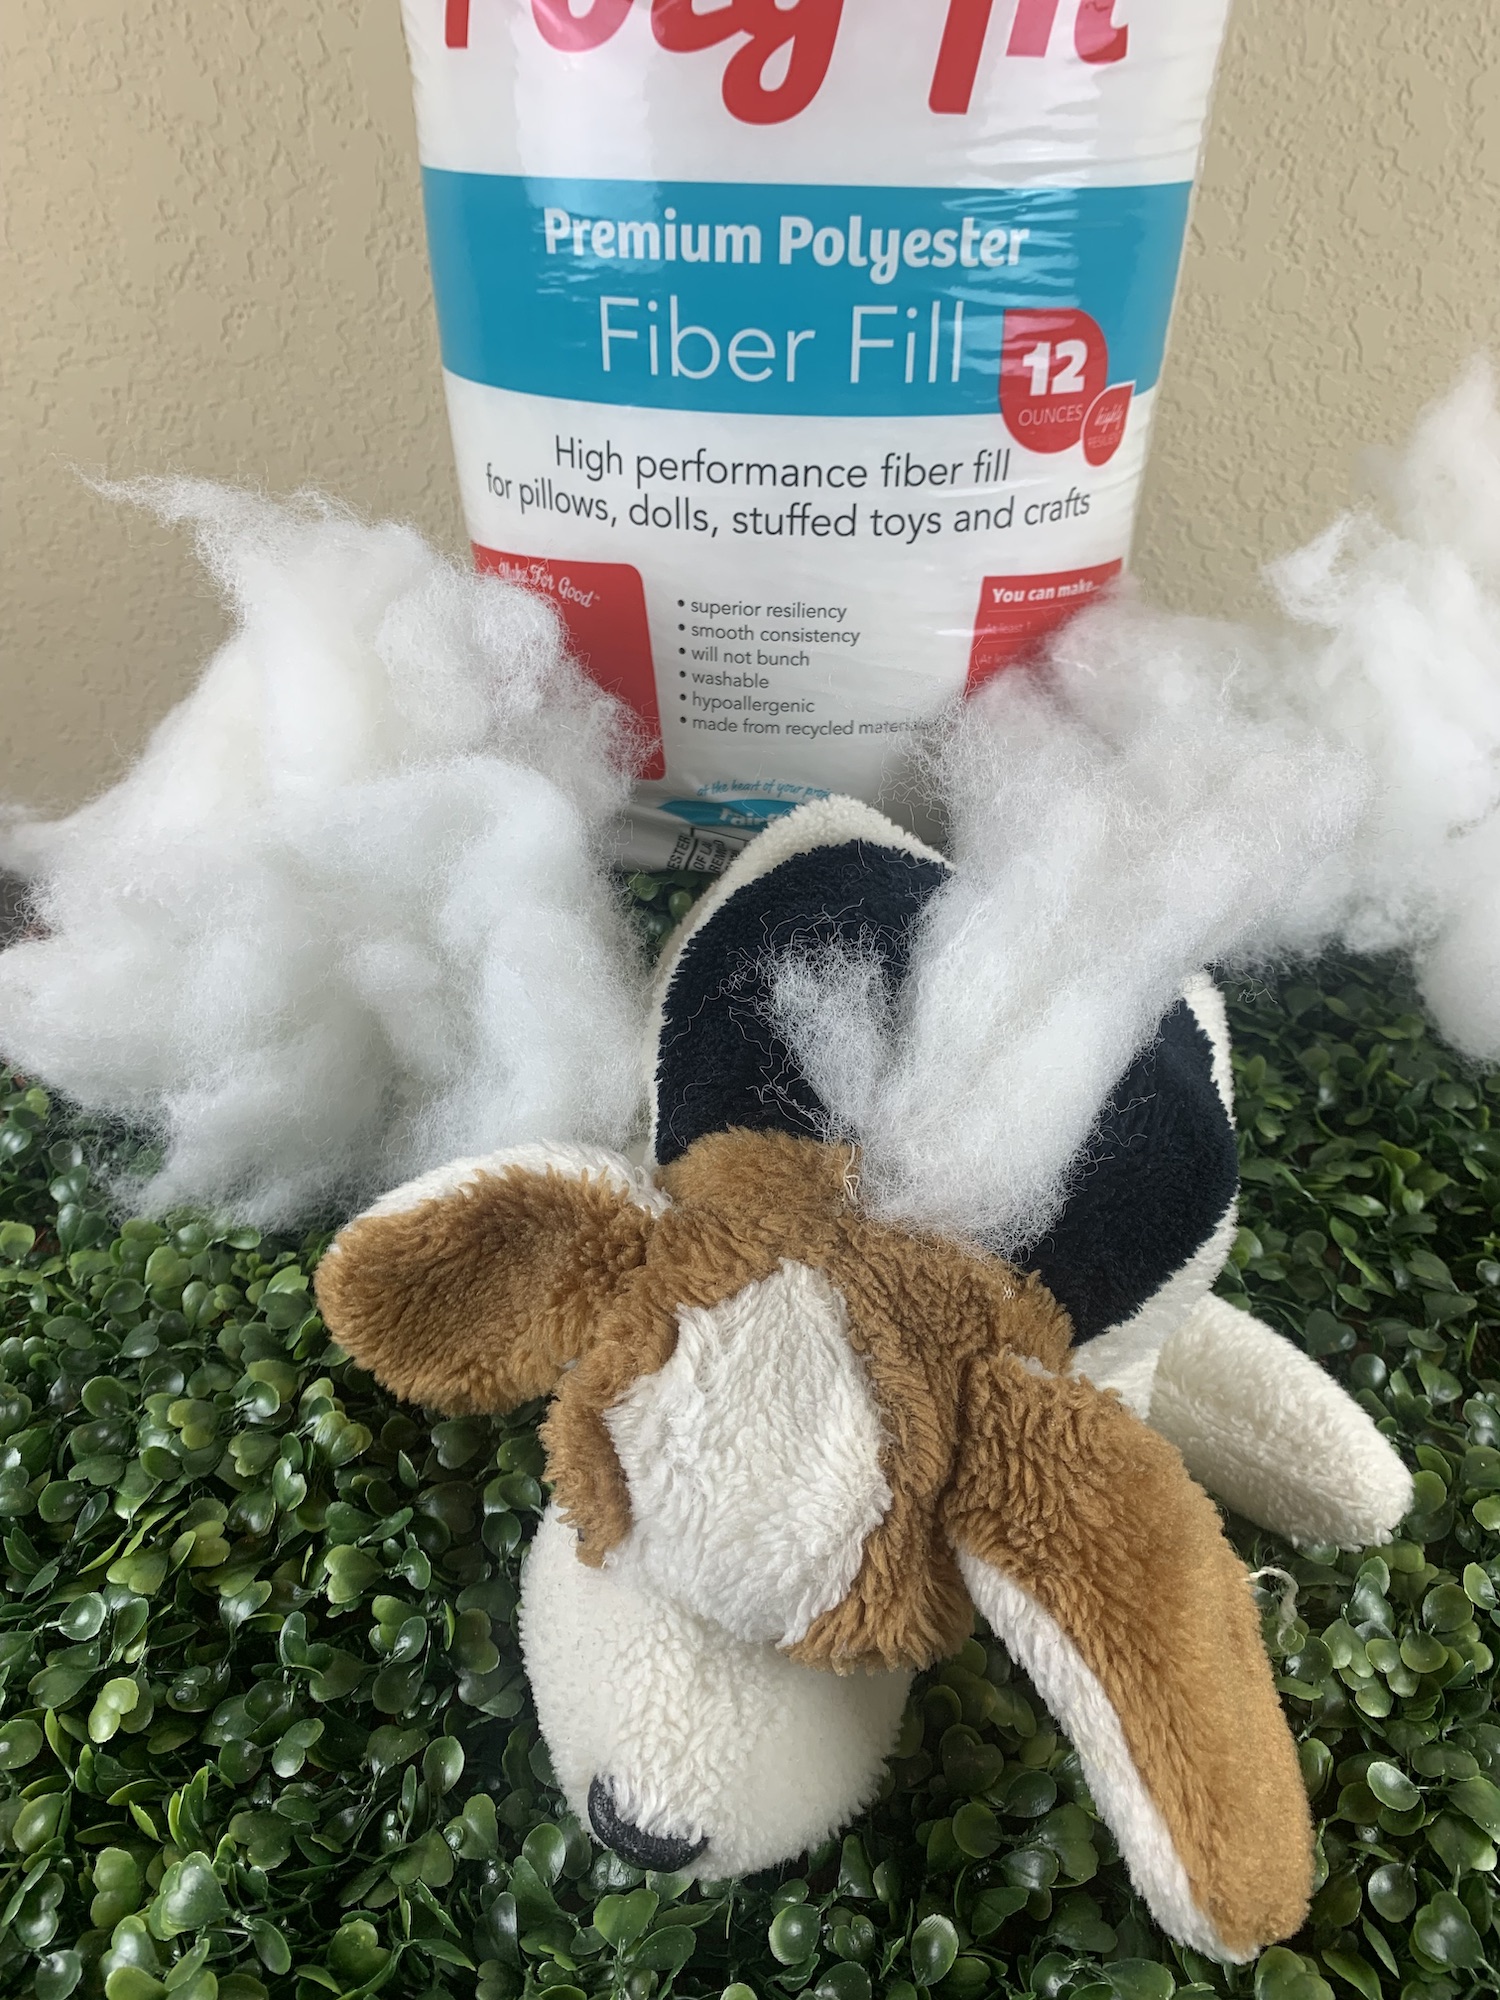 pol-fil for stuffed animal repair